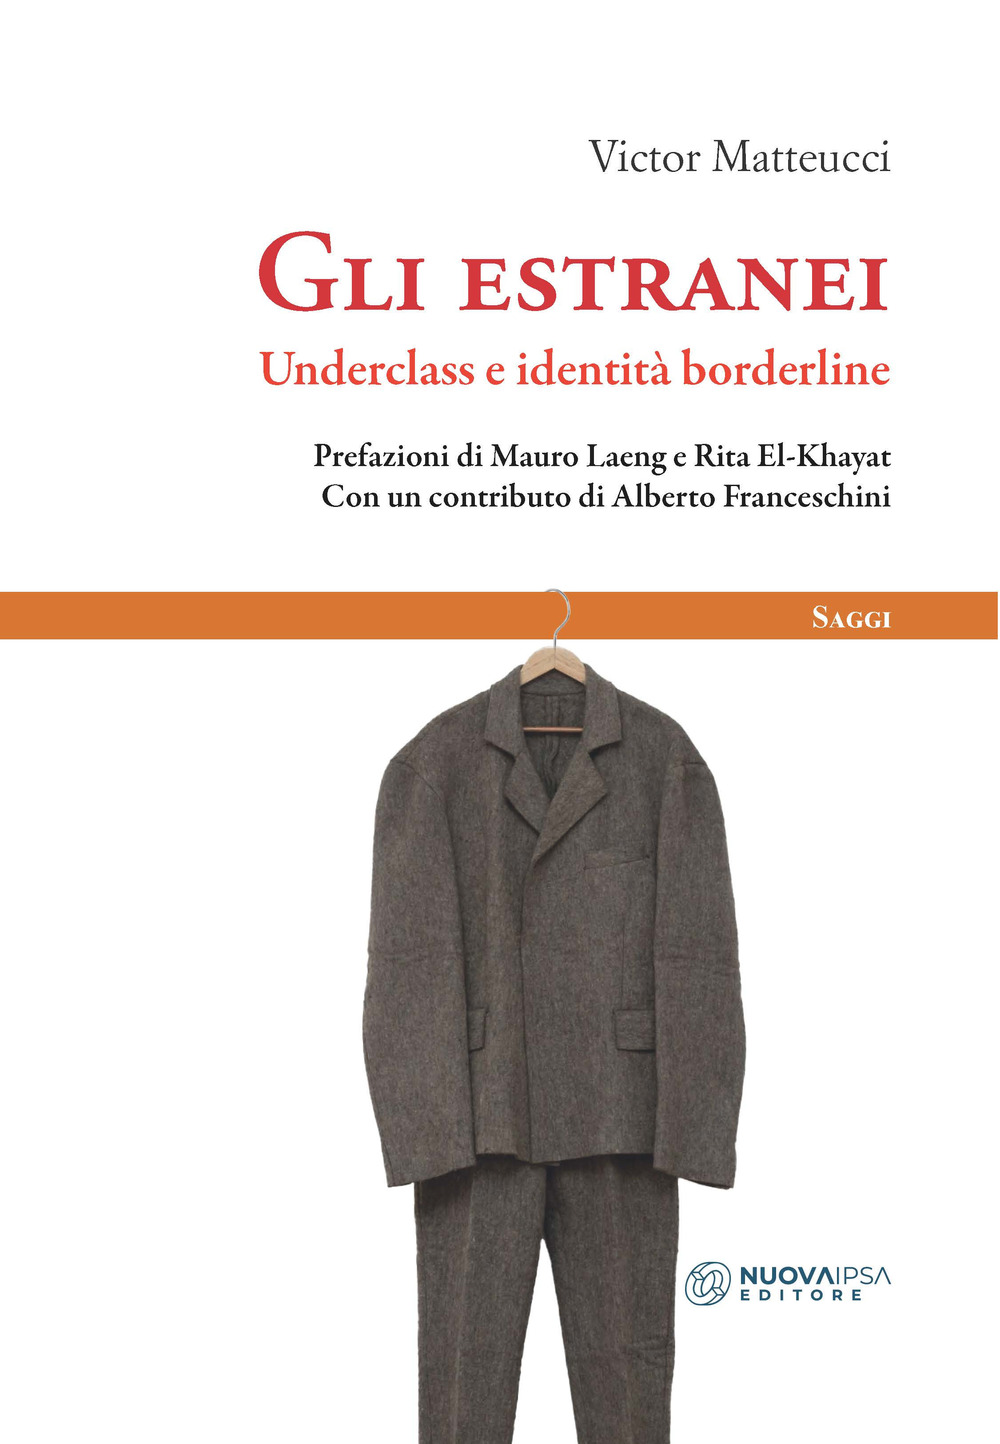 Libri Victor Matteucci - Gli Estranei. Underclass E Identita Borderline NUOVO SIGILLATO, EDIZIONE DEL 15/07/2021 SUBITO DISPONIBILE